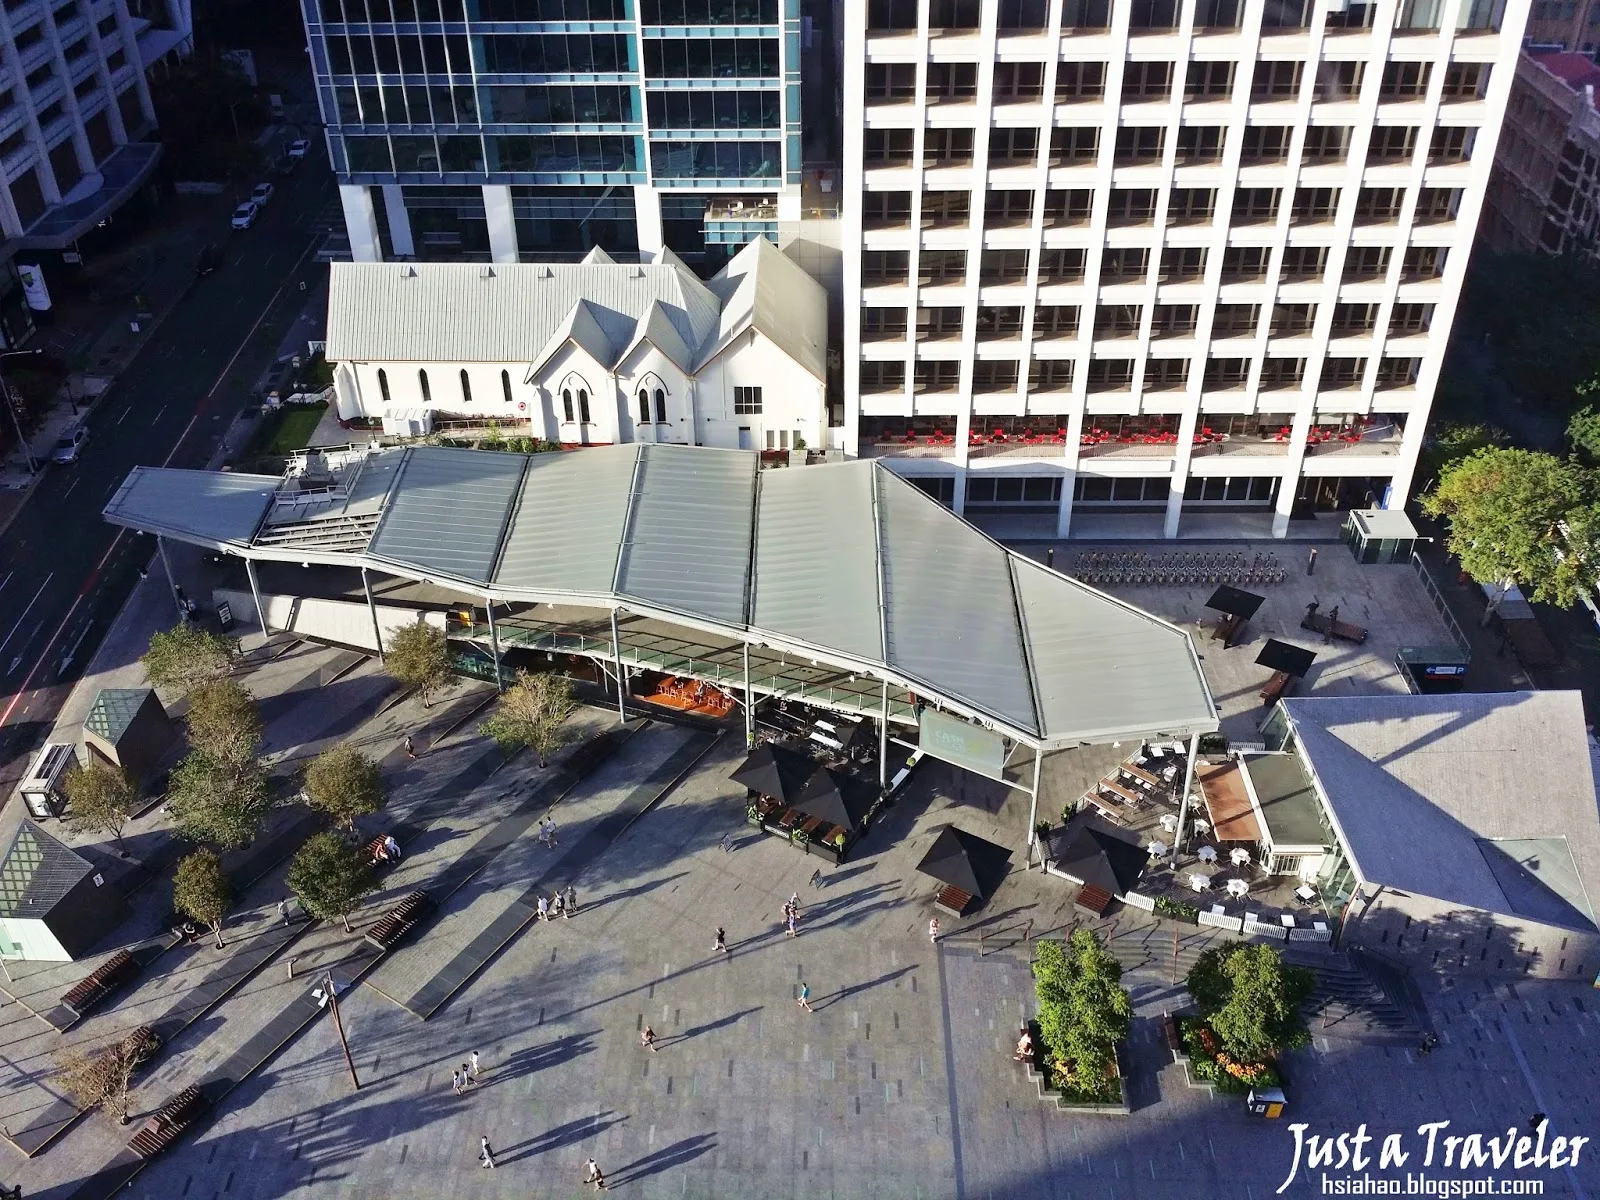 布里斯本-市區-景點-喬治國王廣場-布里斯本市政廳-遊記-行程-介紹-King George Square-Brisbane City Hall-布里斯班